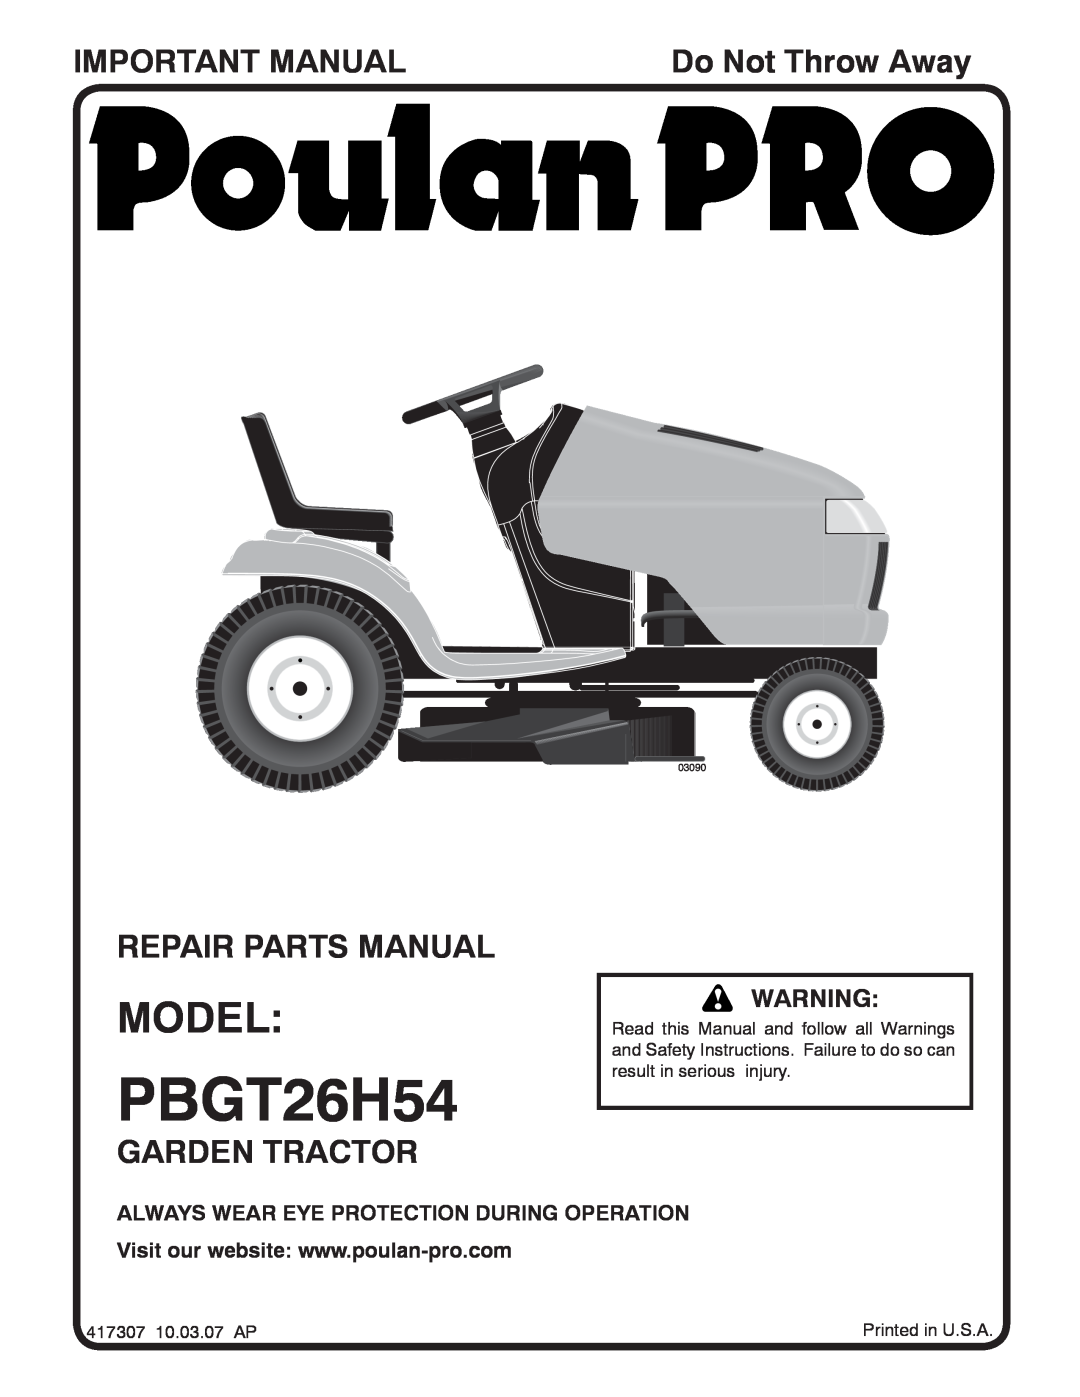 Poulan 417307 manual Important Manual, Repair Parts Manual, Garden Tractor, Do Not Throw Away, PBGT26H54, Model, 03090 